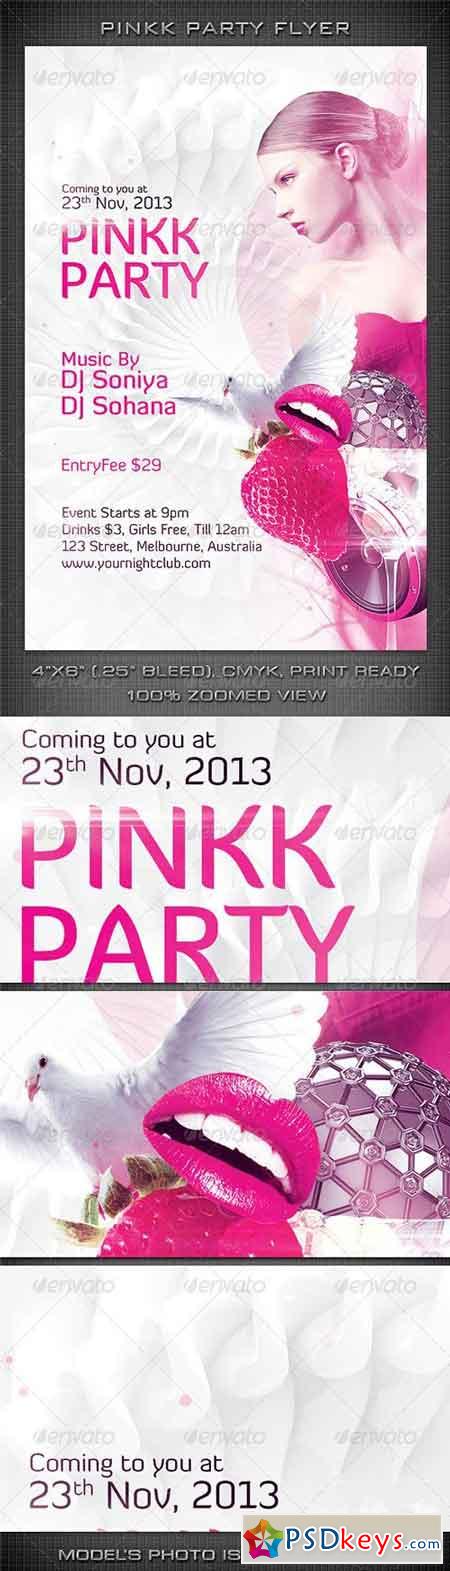 Pinkk Party Flyer 6078165